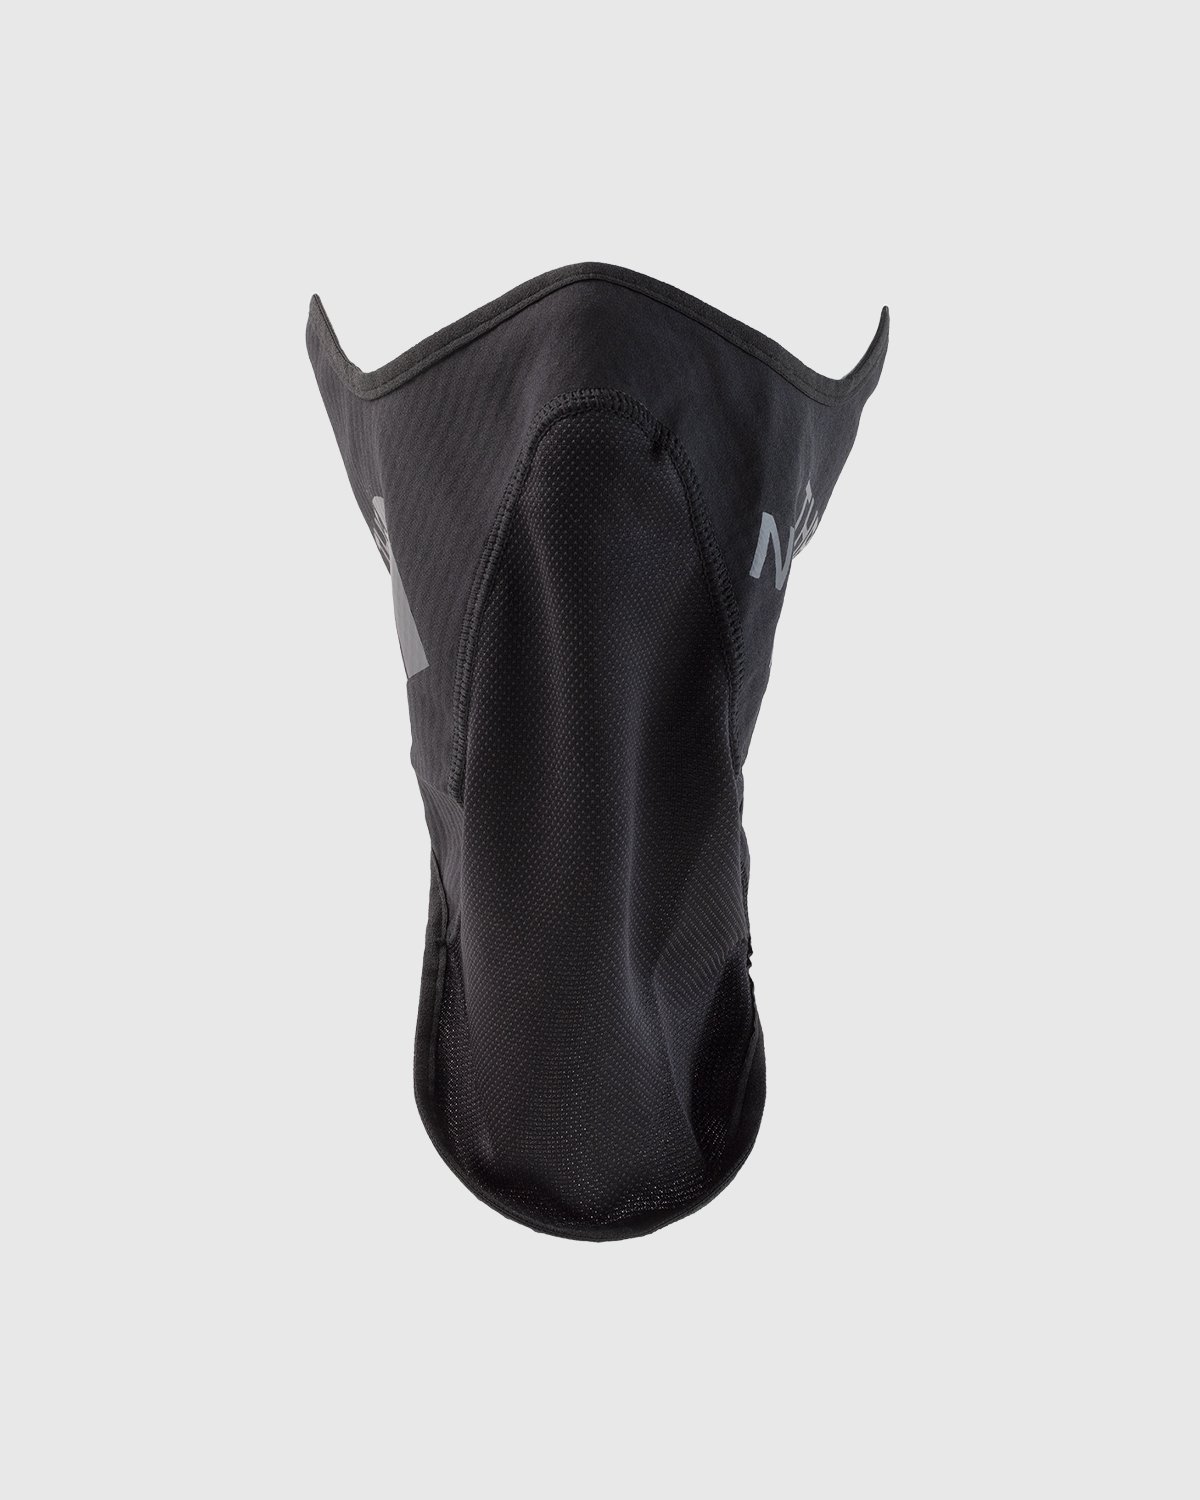 The North Face - Shredder Ski Mask Black - Accessories - Black - Image 1